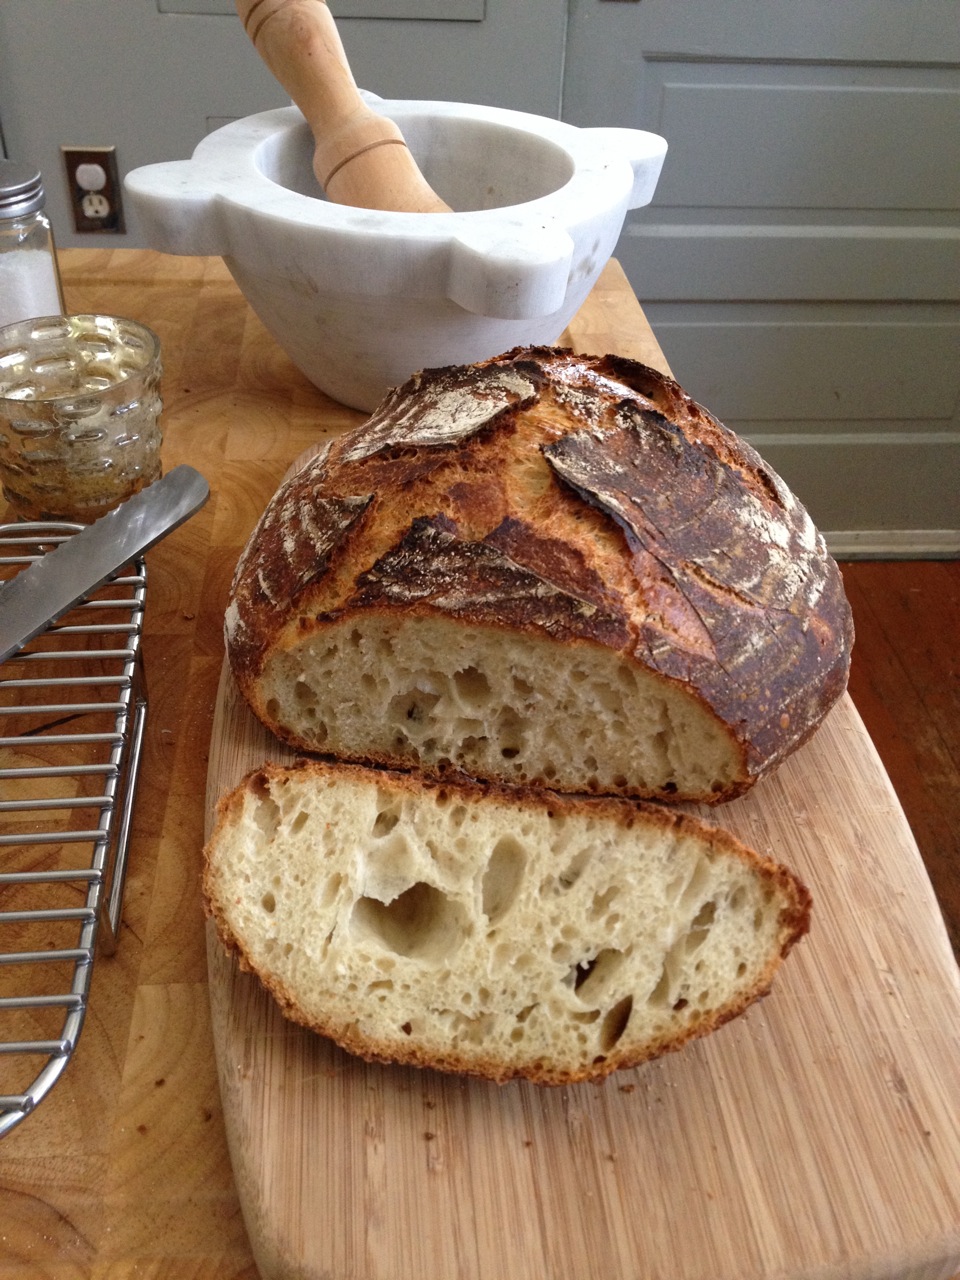 Download Sourdough Starter Perfect Loaf Images - Sourdough Bread Starter